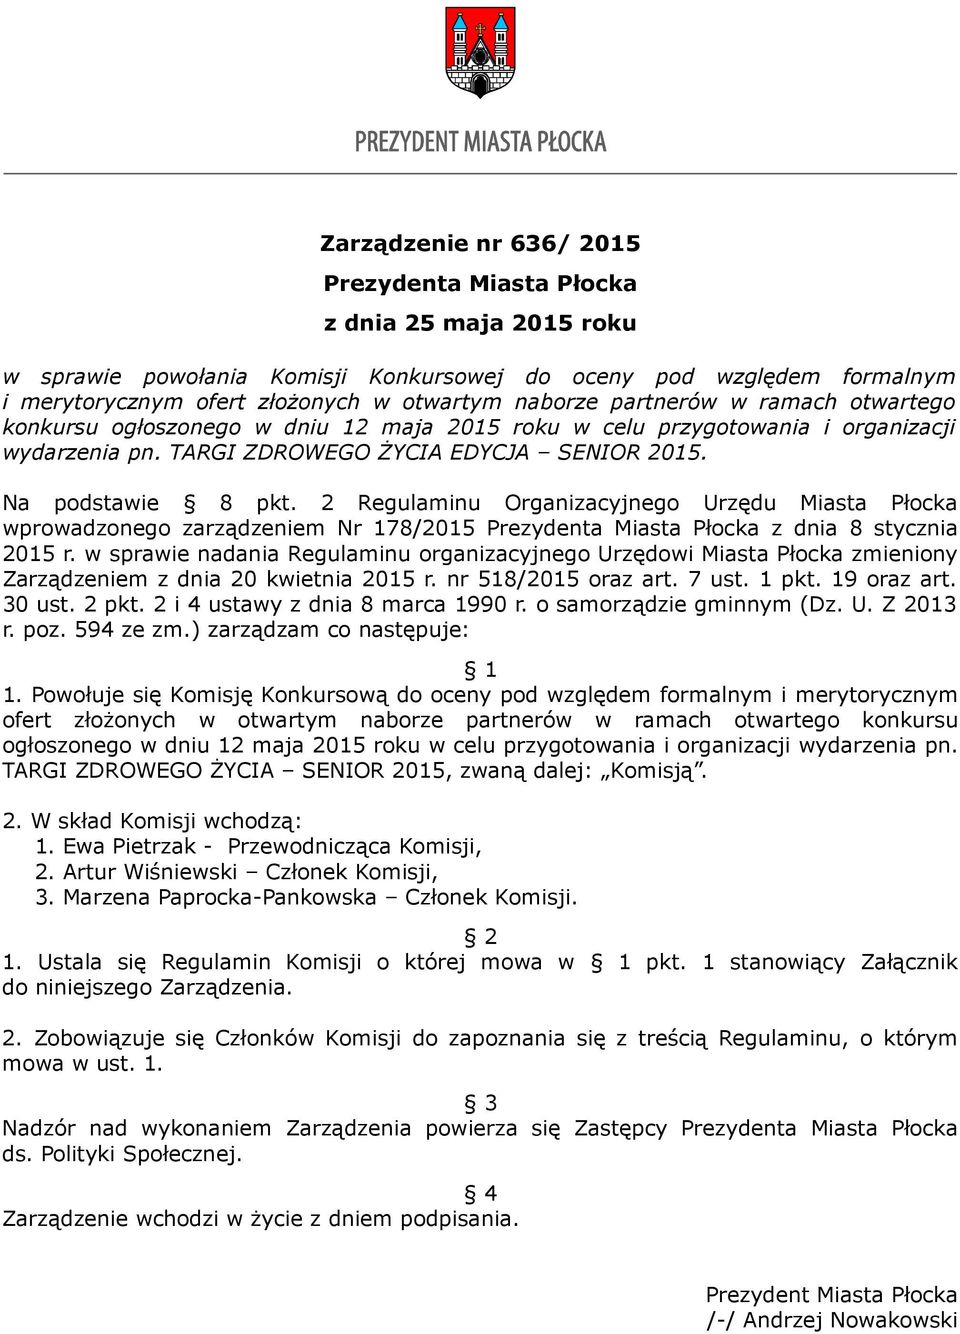 2 Regulaminu Organizacyjnego Urzędu Miasta Płocka wprowadzonego zarządzeniem Nr 178/2015 Prezydenta Miasta Płocka z dnia 8 stycznia 2015 r.